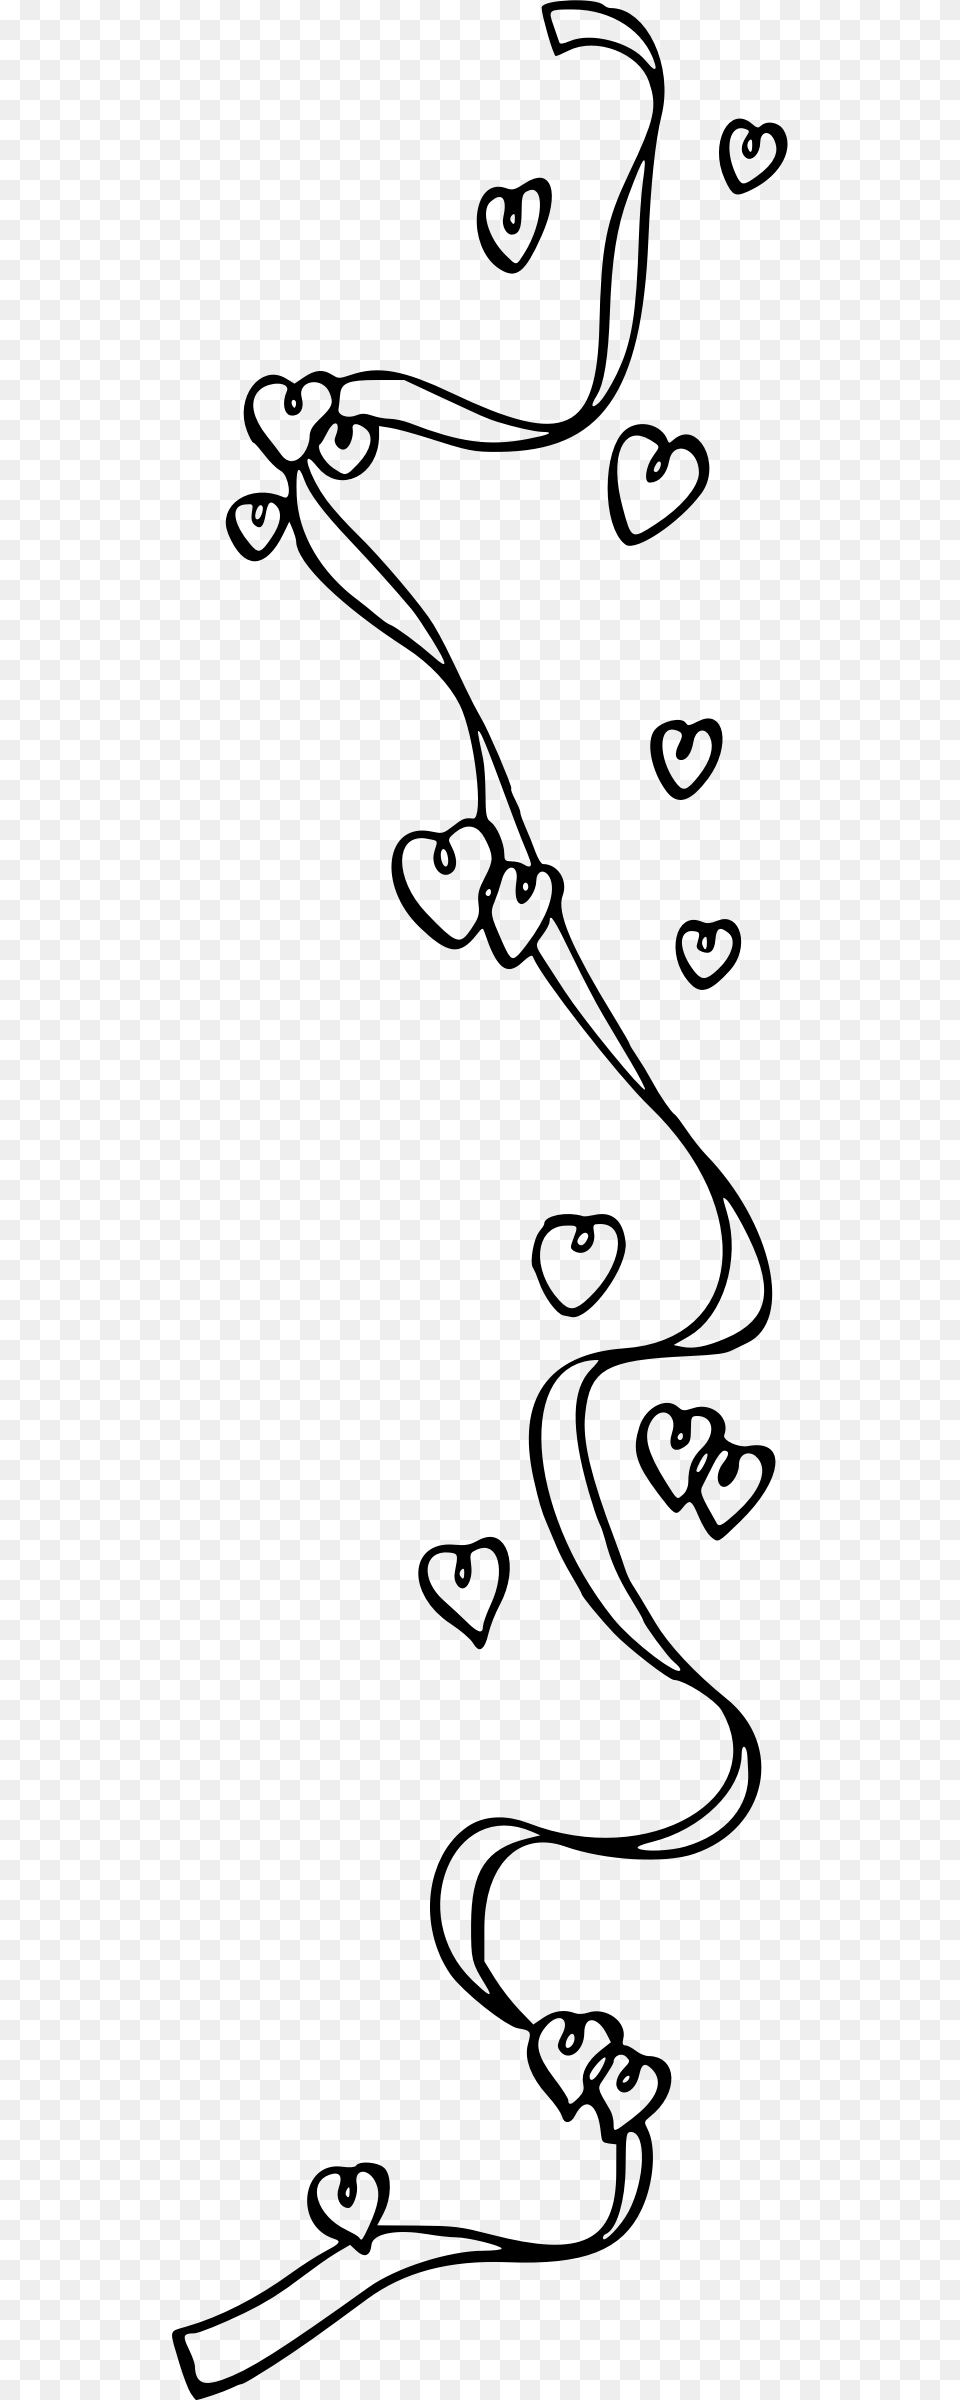 Ribbon And Hearts 1 Clip Arts Clip Art, Gray Png Image